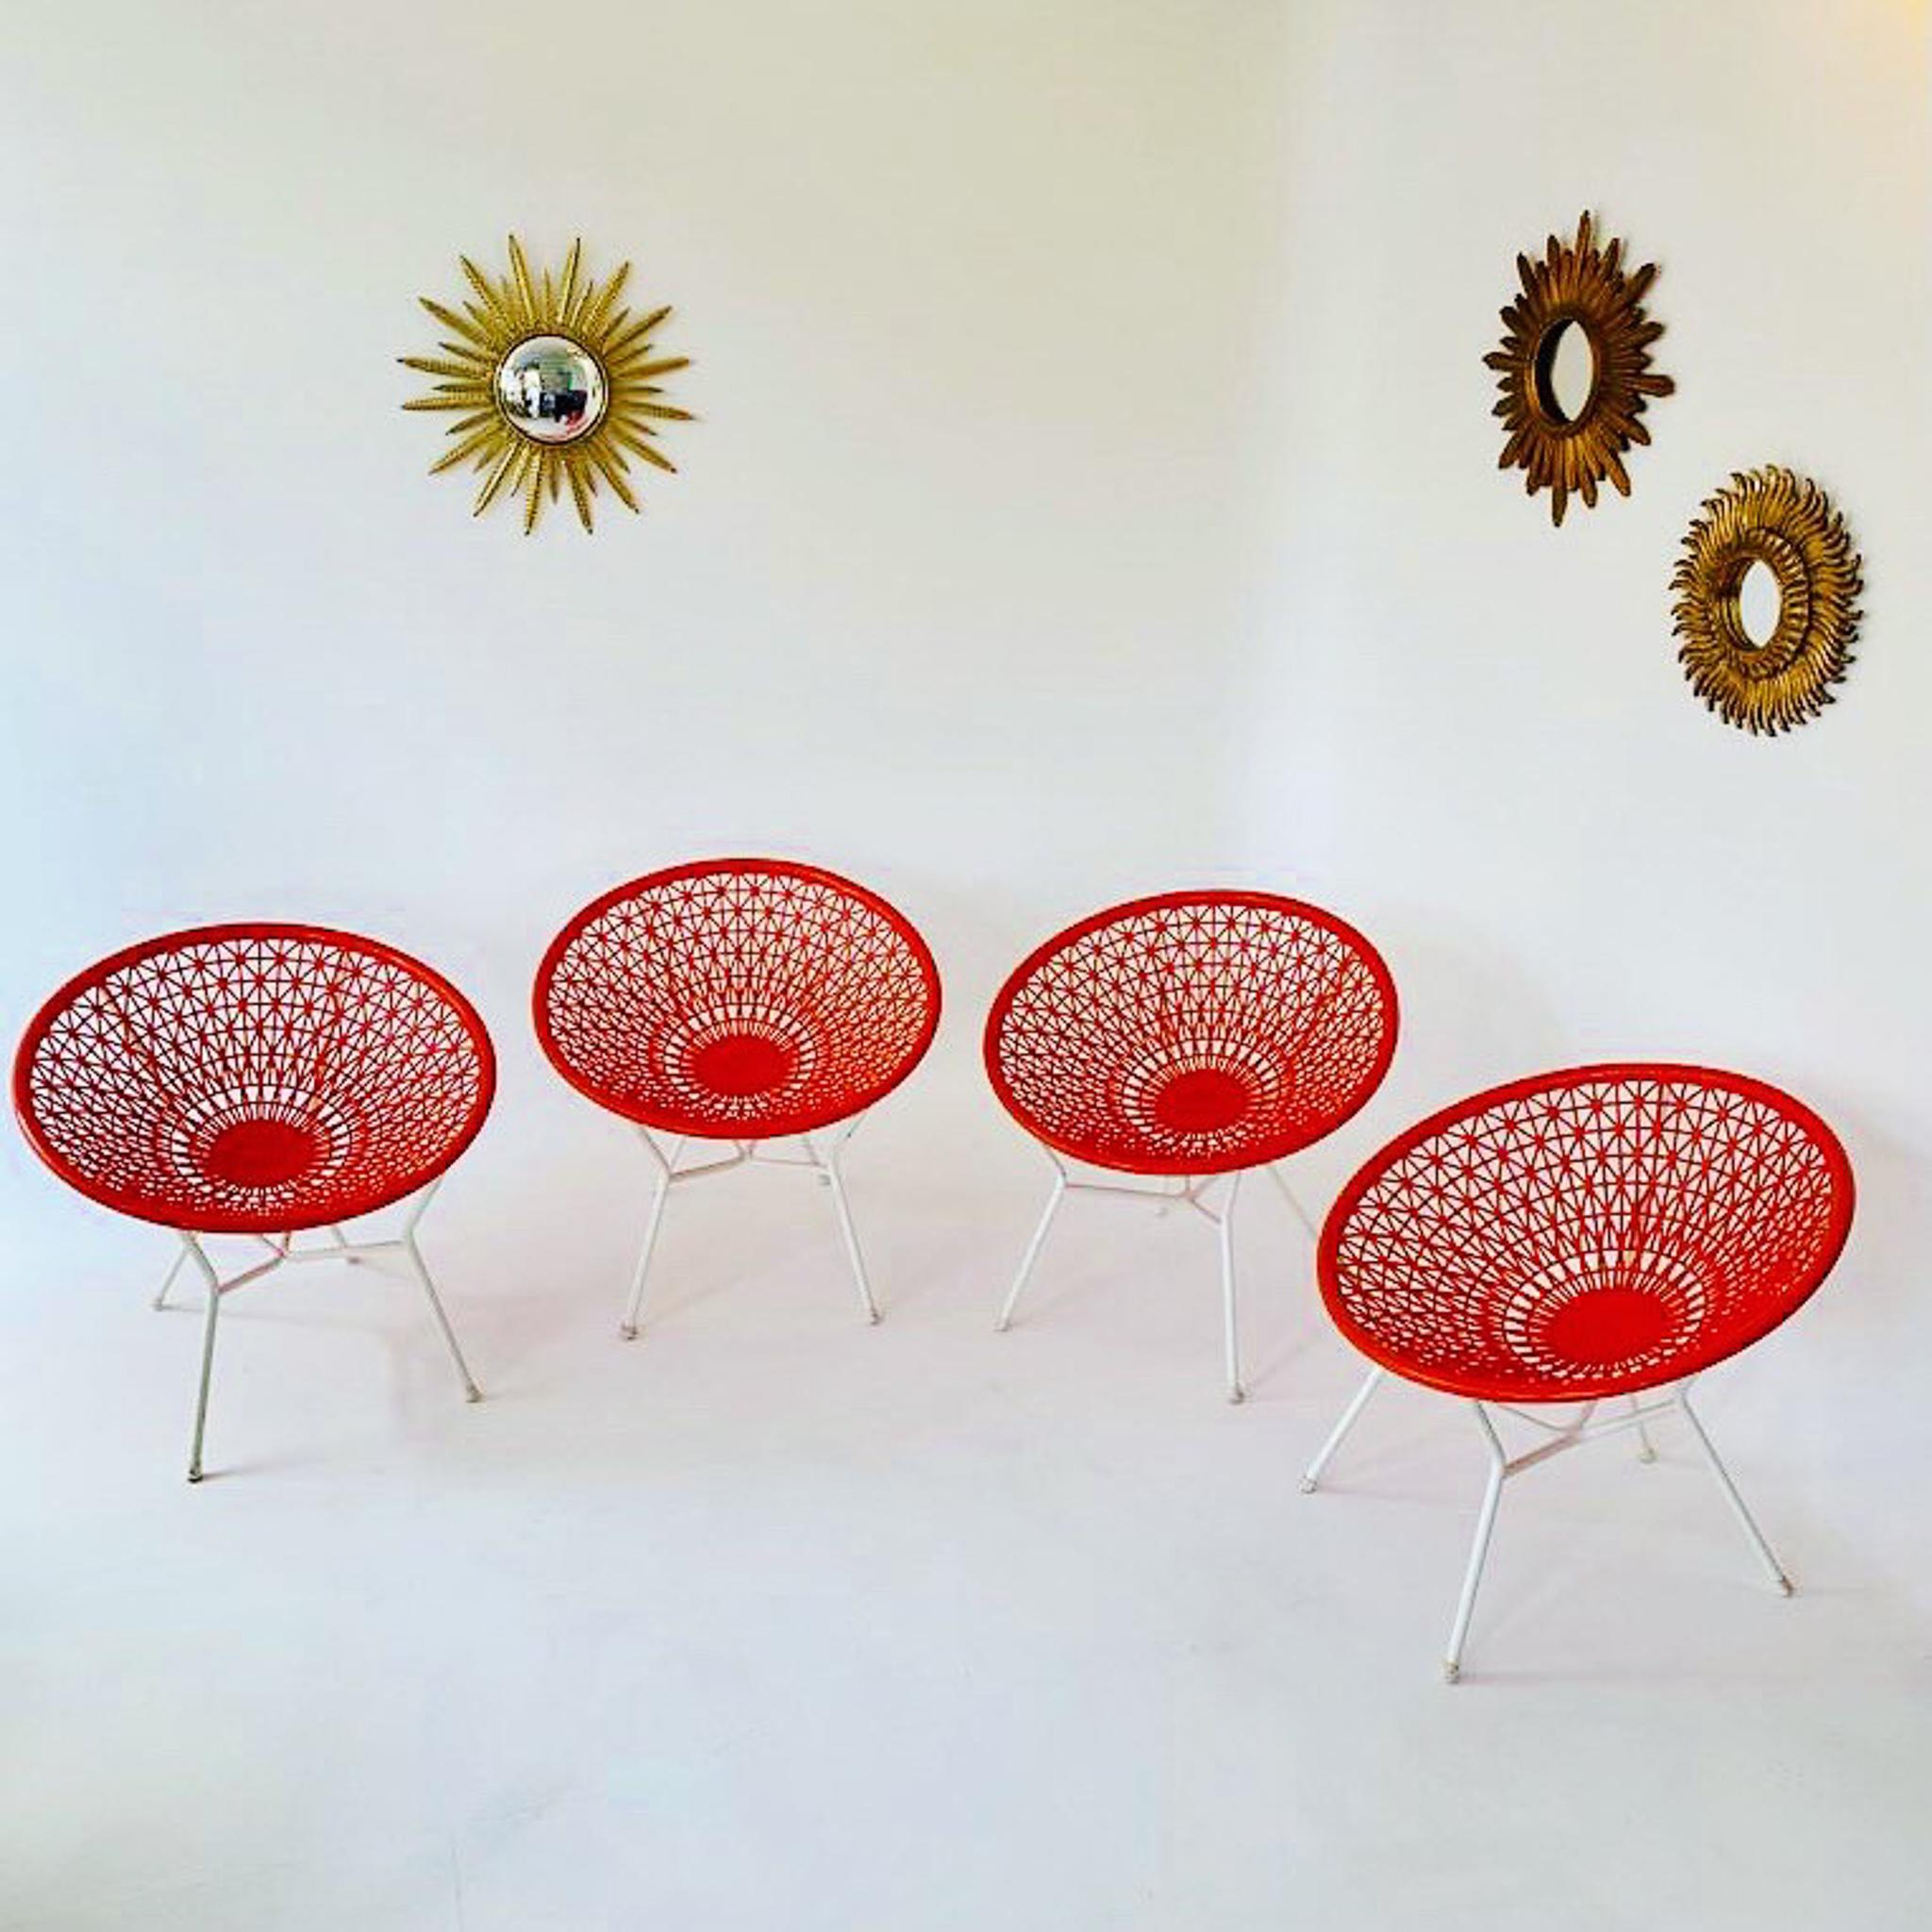 Chaises longues d'extérieur orange et blanches du milieu du siècle, Italie, 1970.

Ce rare ensemble de mobilier d'extérieur composé de chaises 